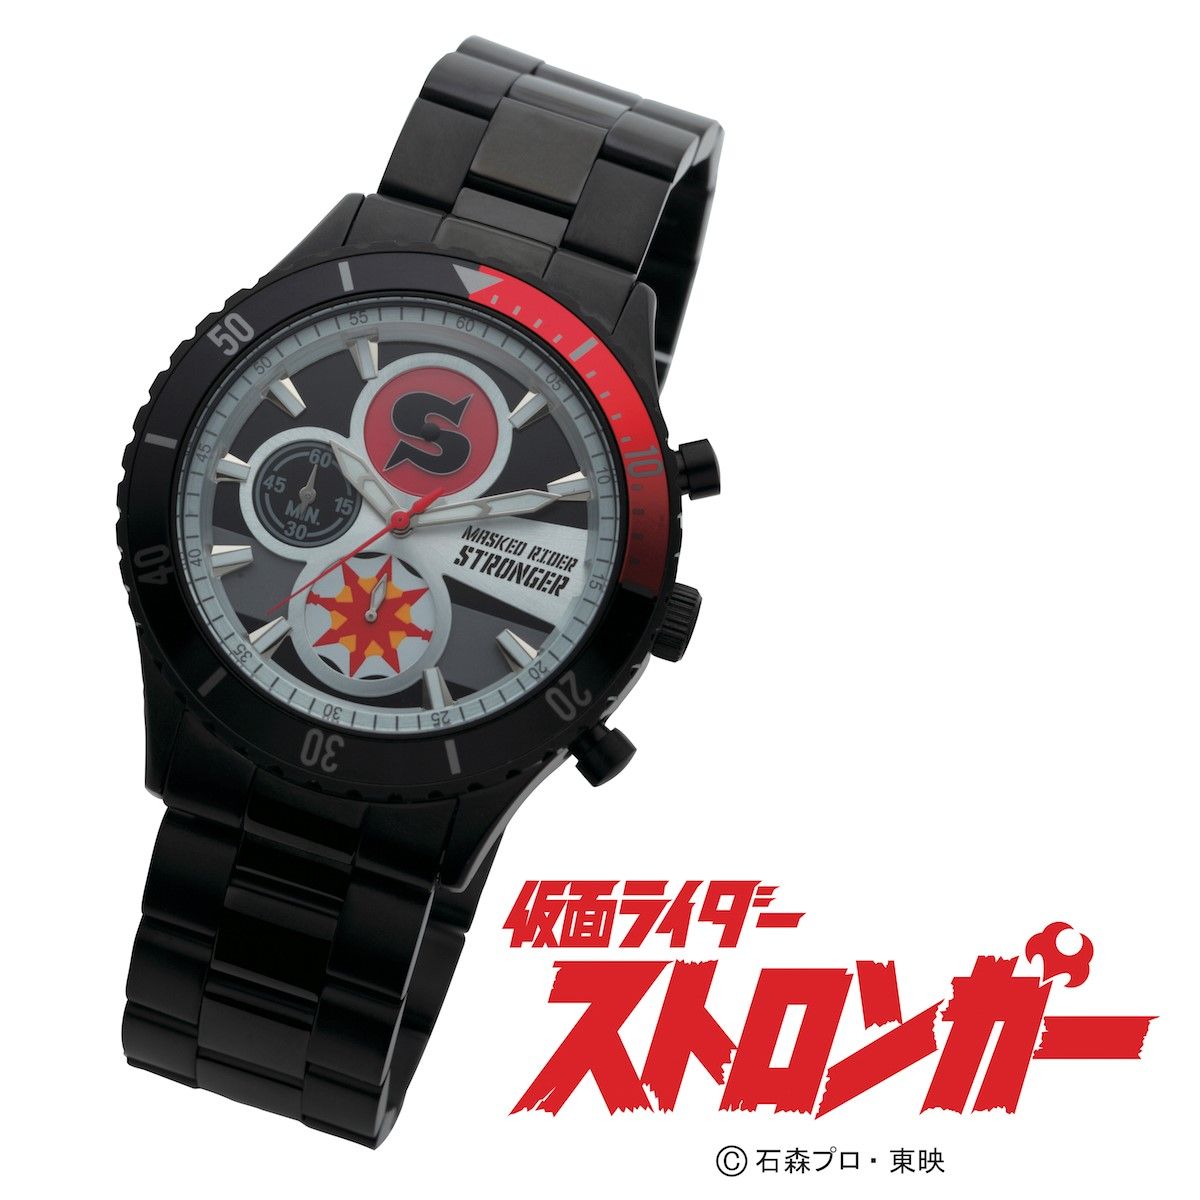 昭和仮面ライダー クロノグラフ腕時計【Live Action Watch】〔1号・X 